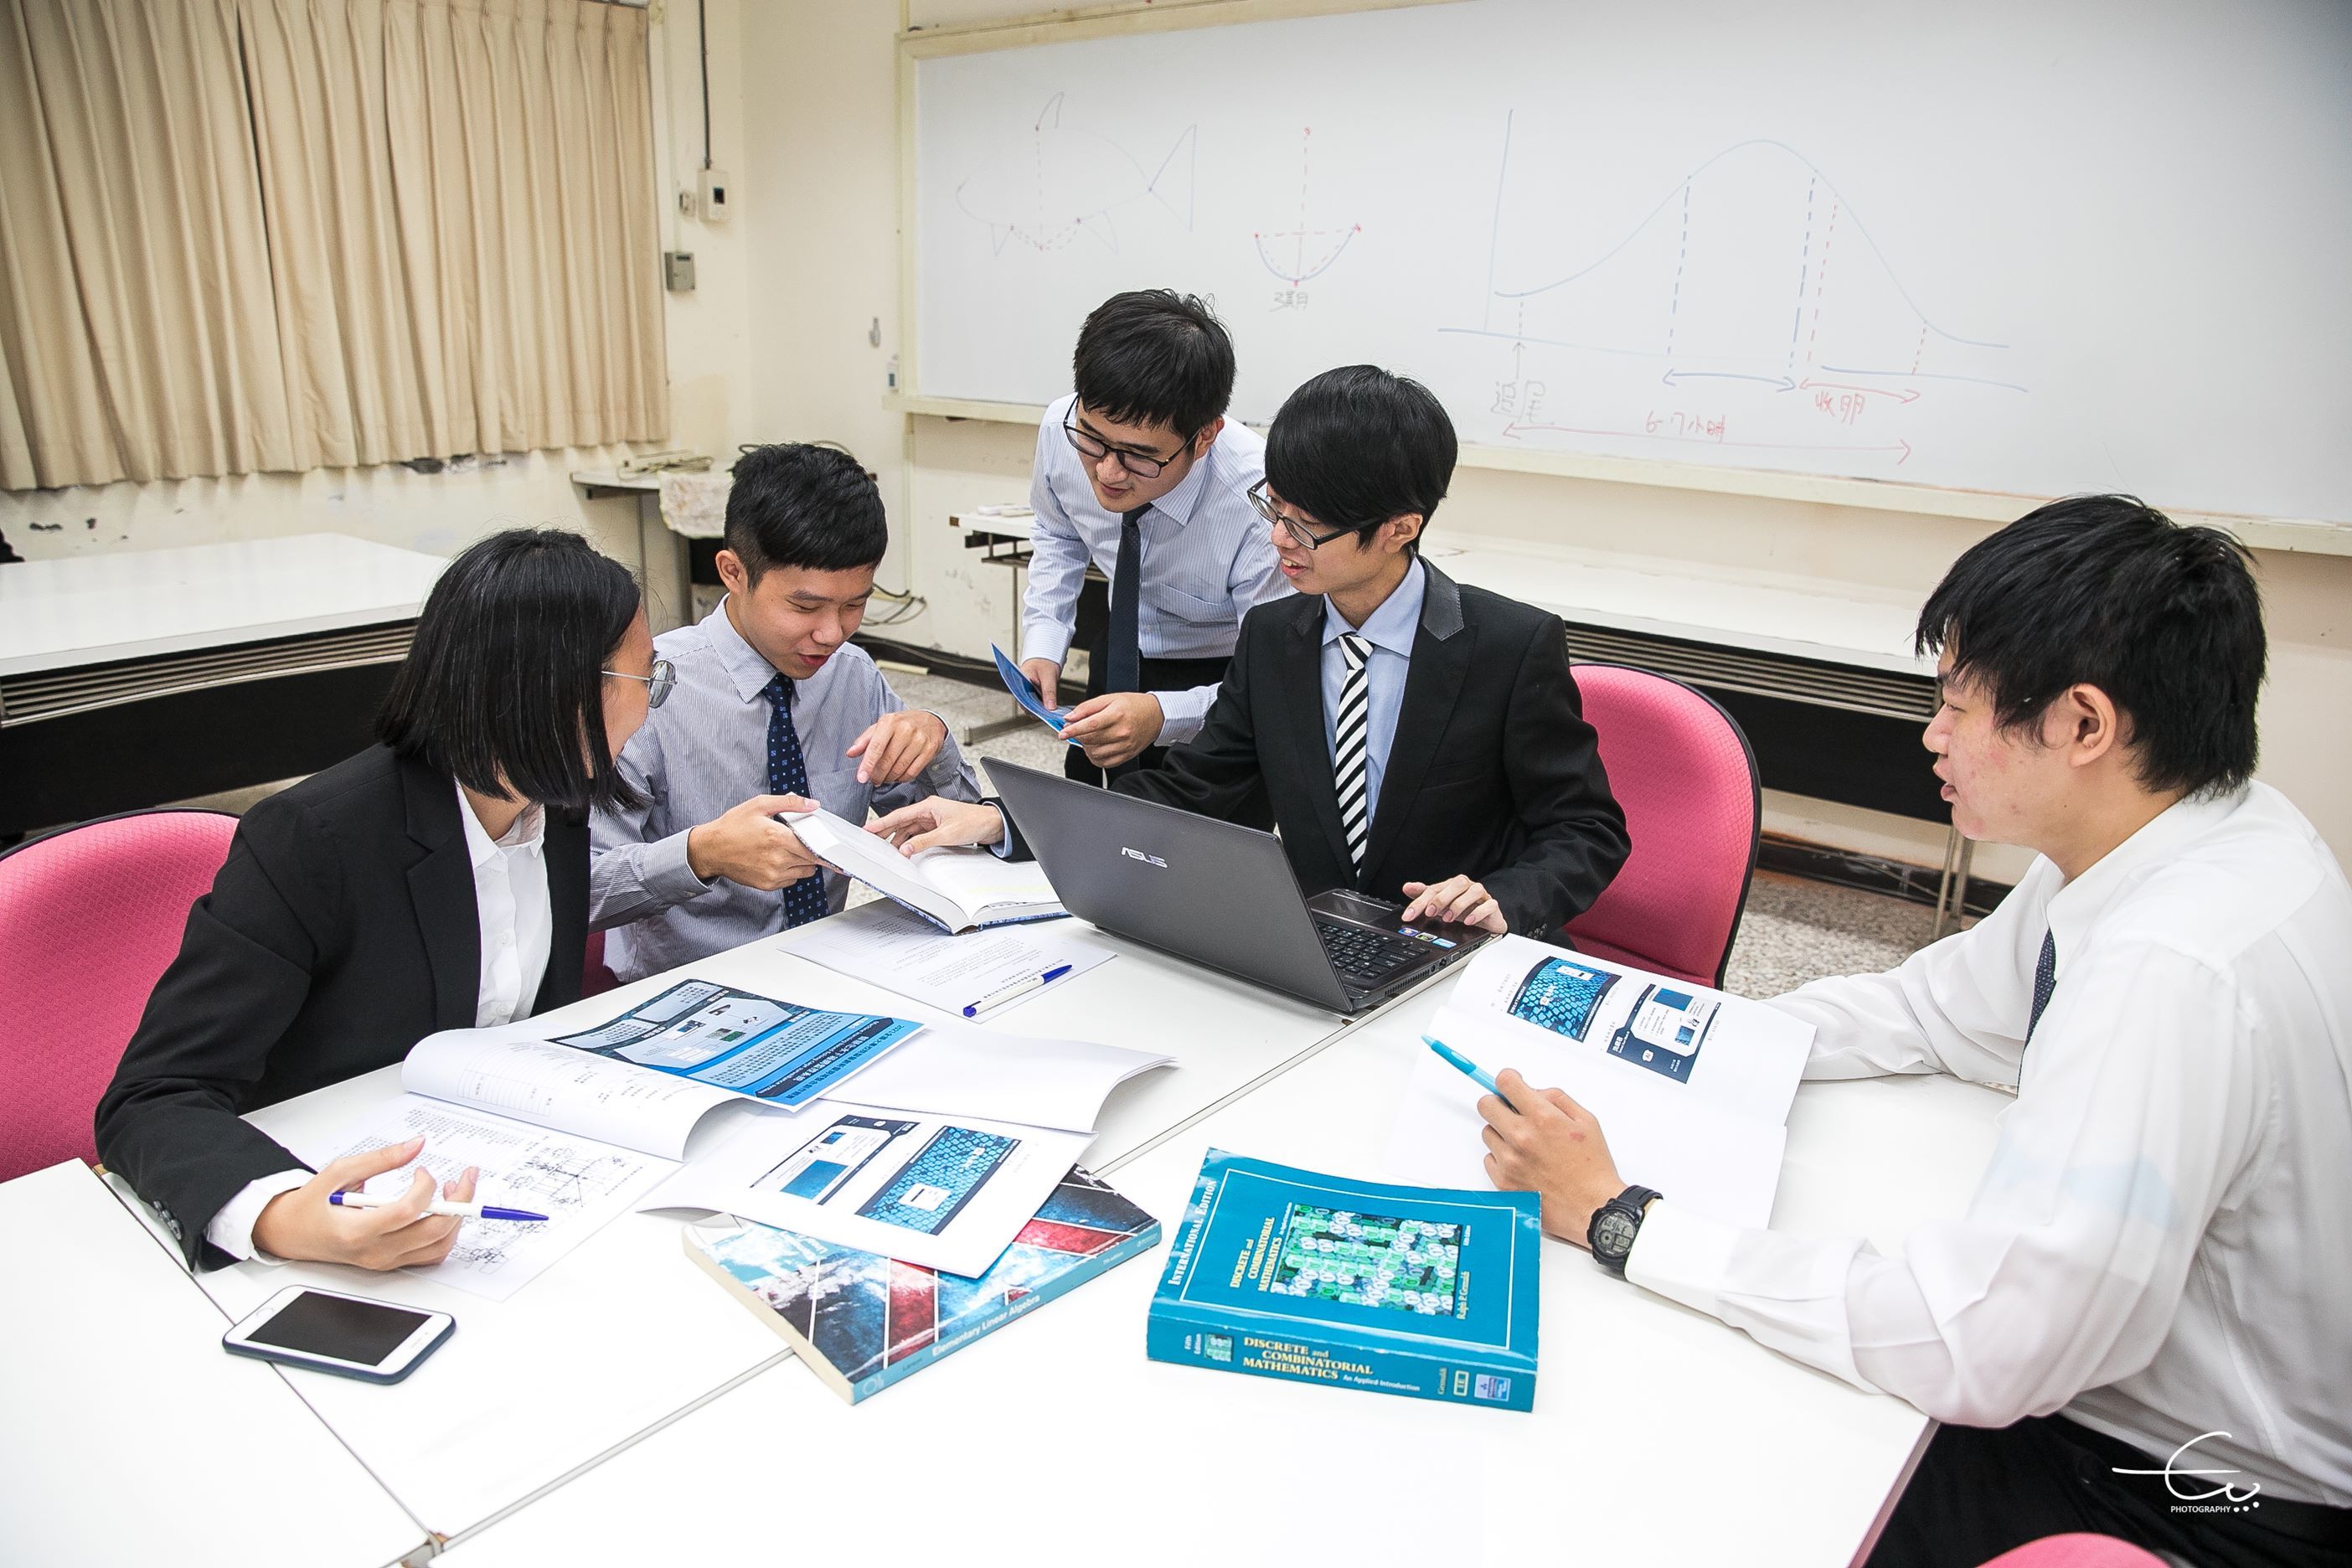 學生團隊鄒承儫、黃崇淵、蘇柏瑜、吳家瑄與學弟一同討論實驗數據